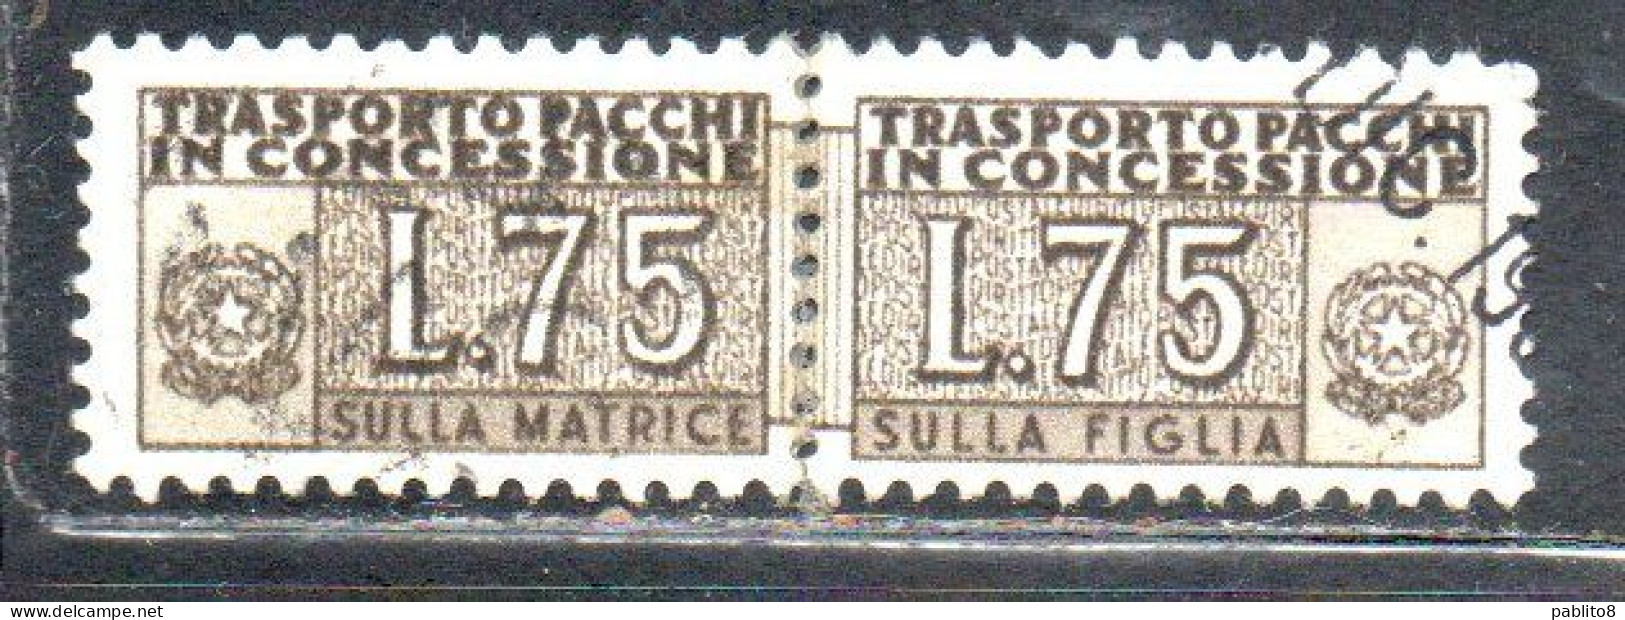 ITALIA REPUBBLICA ITALY REPUBLIC 1955 1981 PACCHI IN CONCESSIONE PARCEL POST STELLE STARS LIRE 75 USATO USED OBLIT - Colis-concession